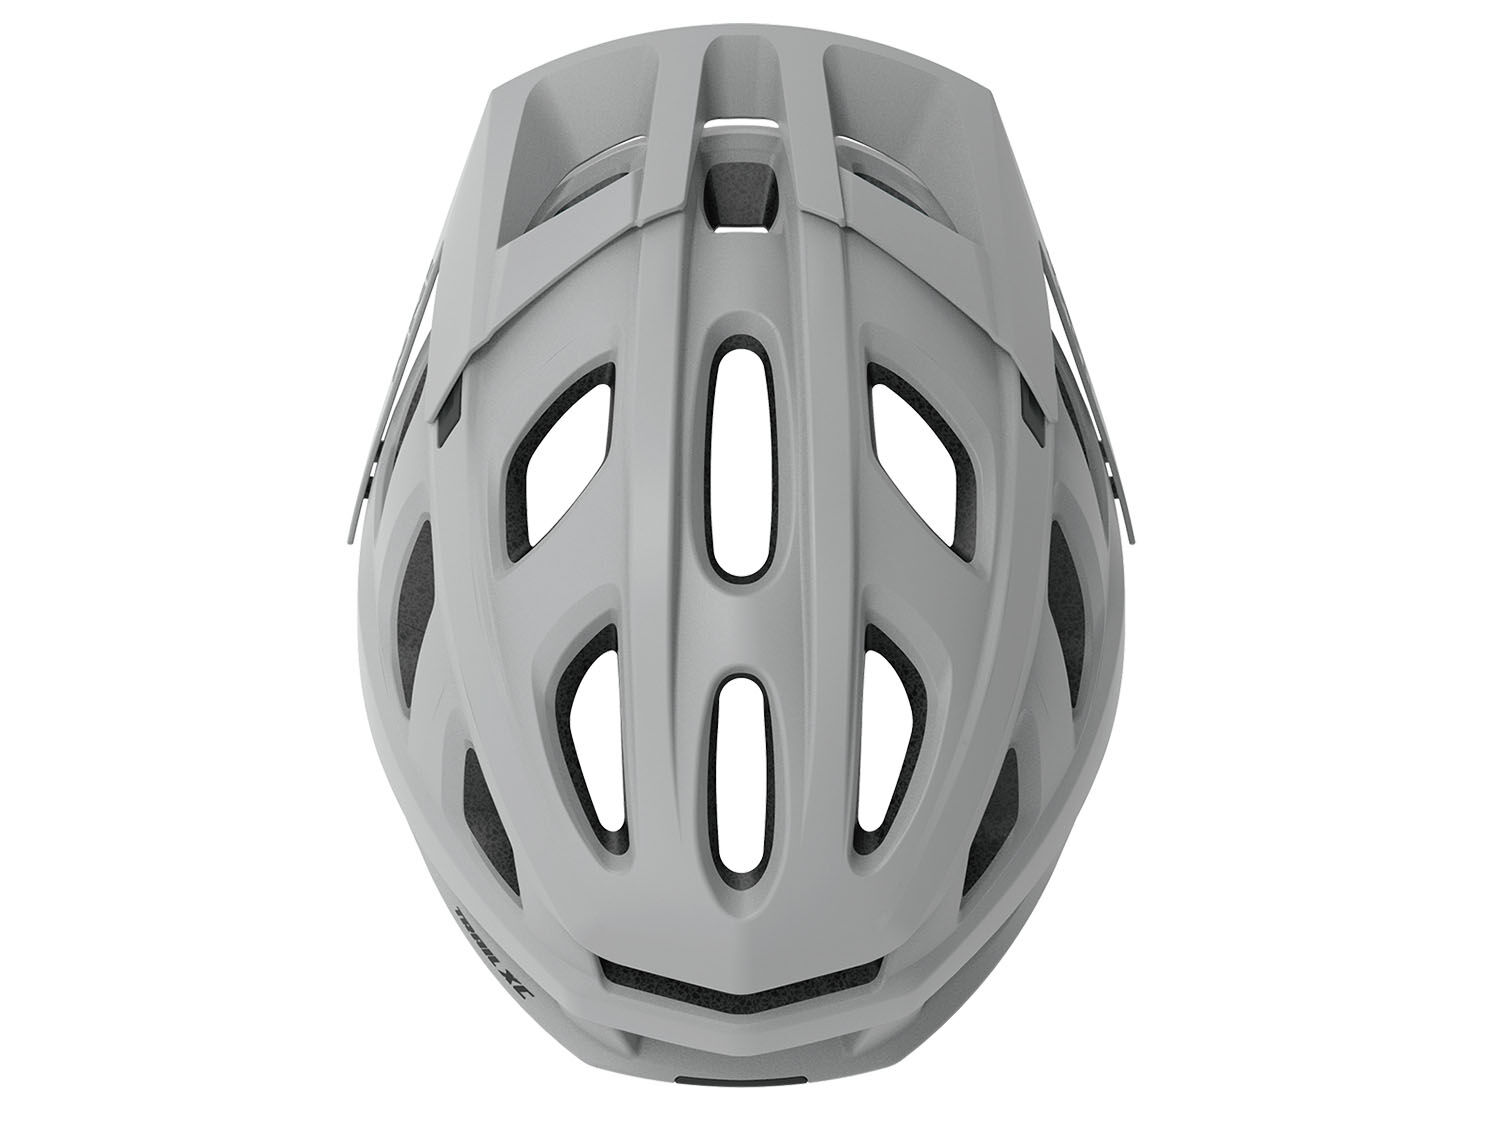 iXS Trail XC Evo Helmet, grey, S/M